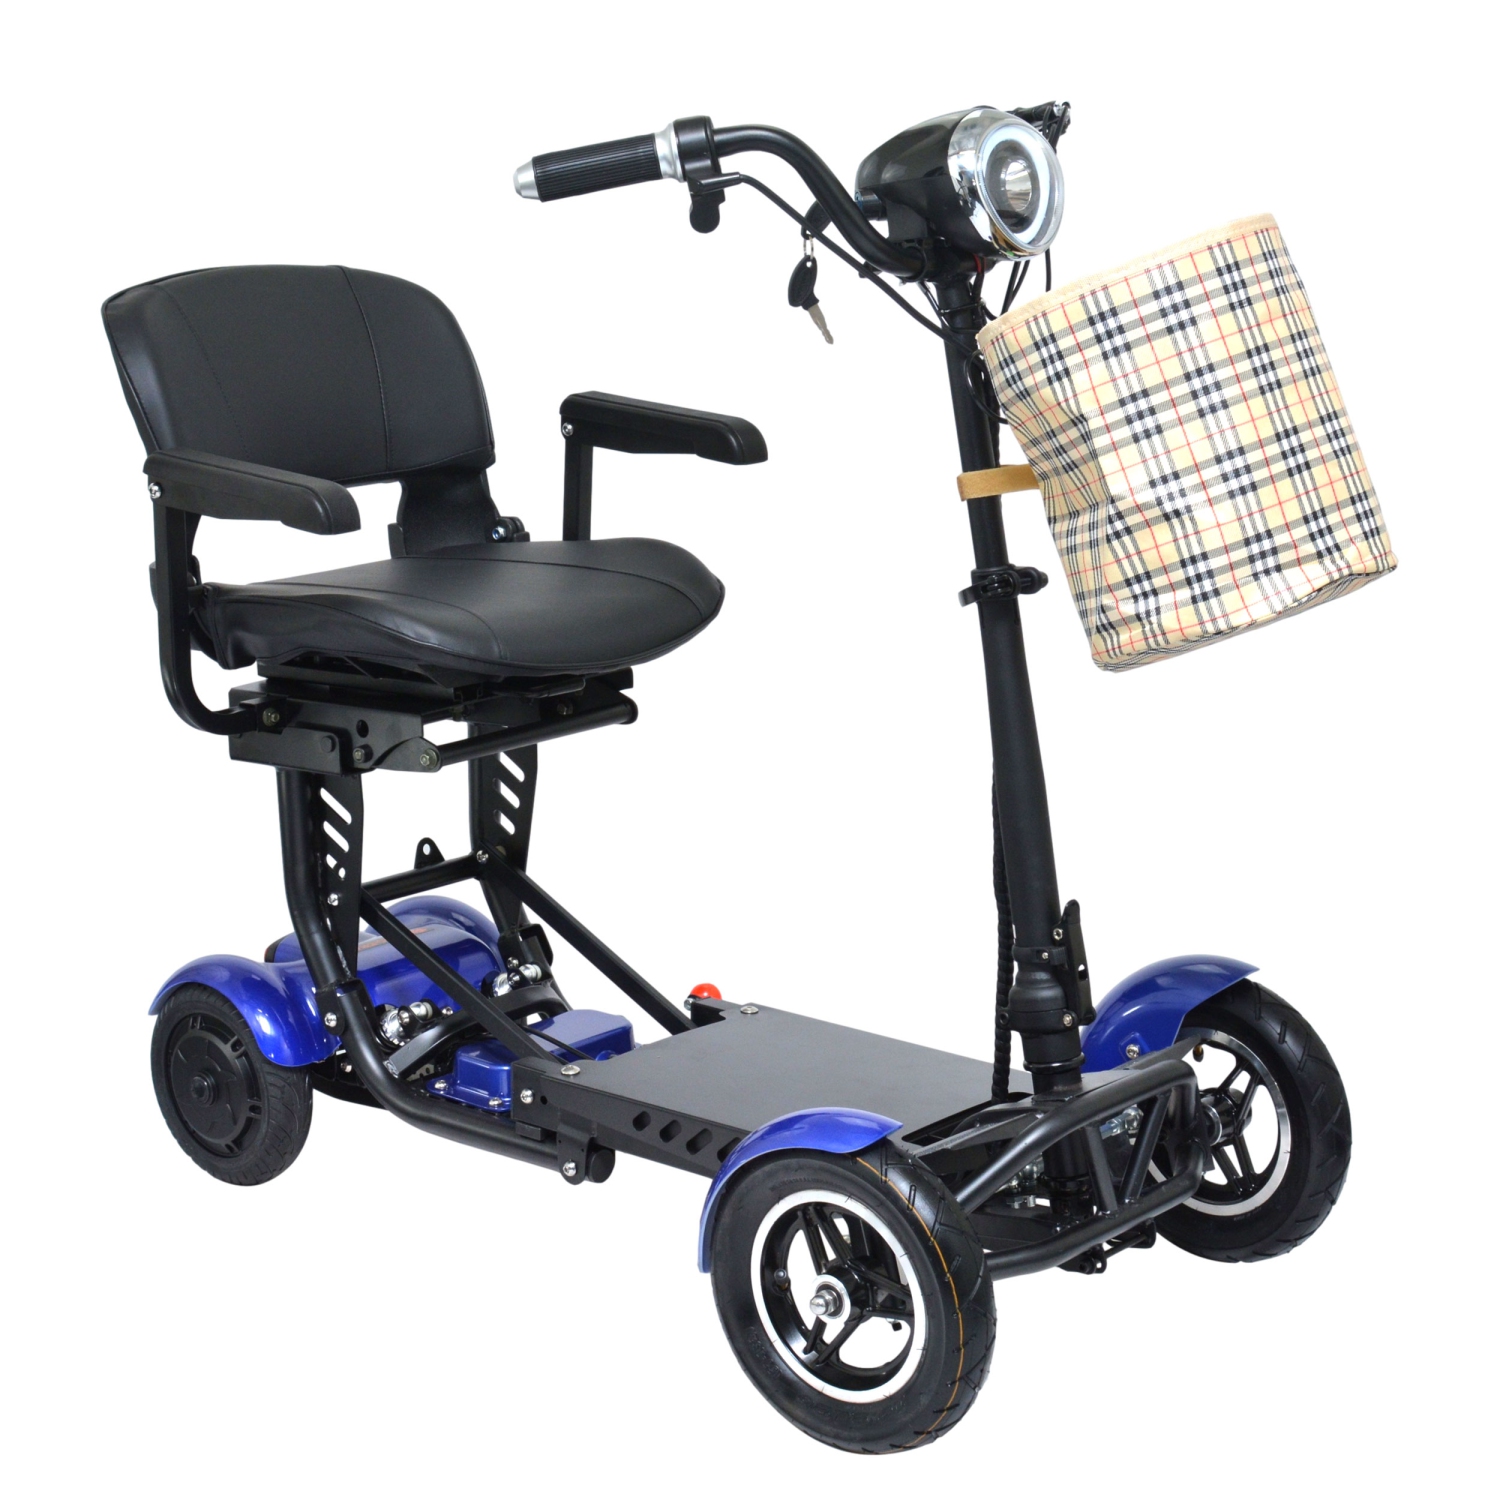 Scooter de mobilité pliable portable léger, 4 roues longue durée de vie de la batterie, voyage facile, jusqu'à 15 miles - couleur bleue